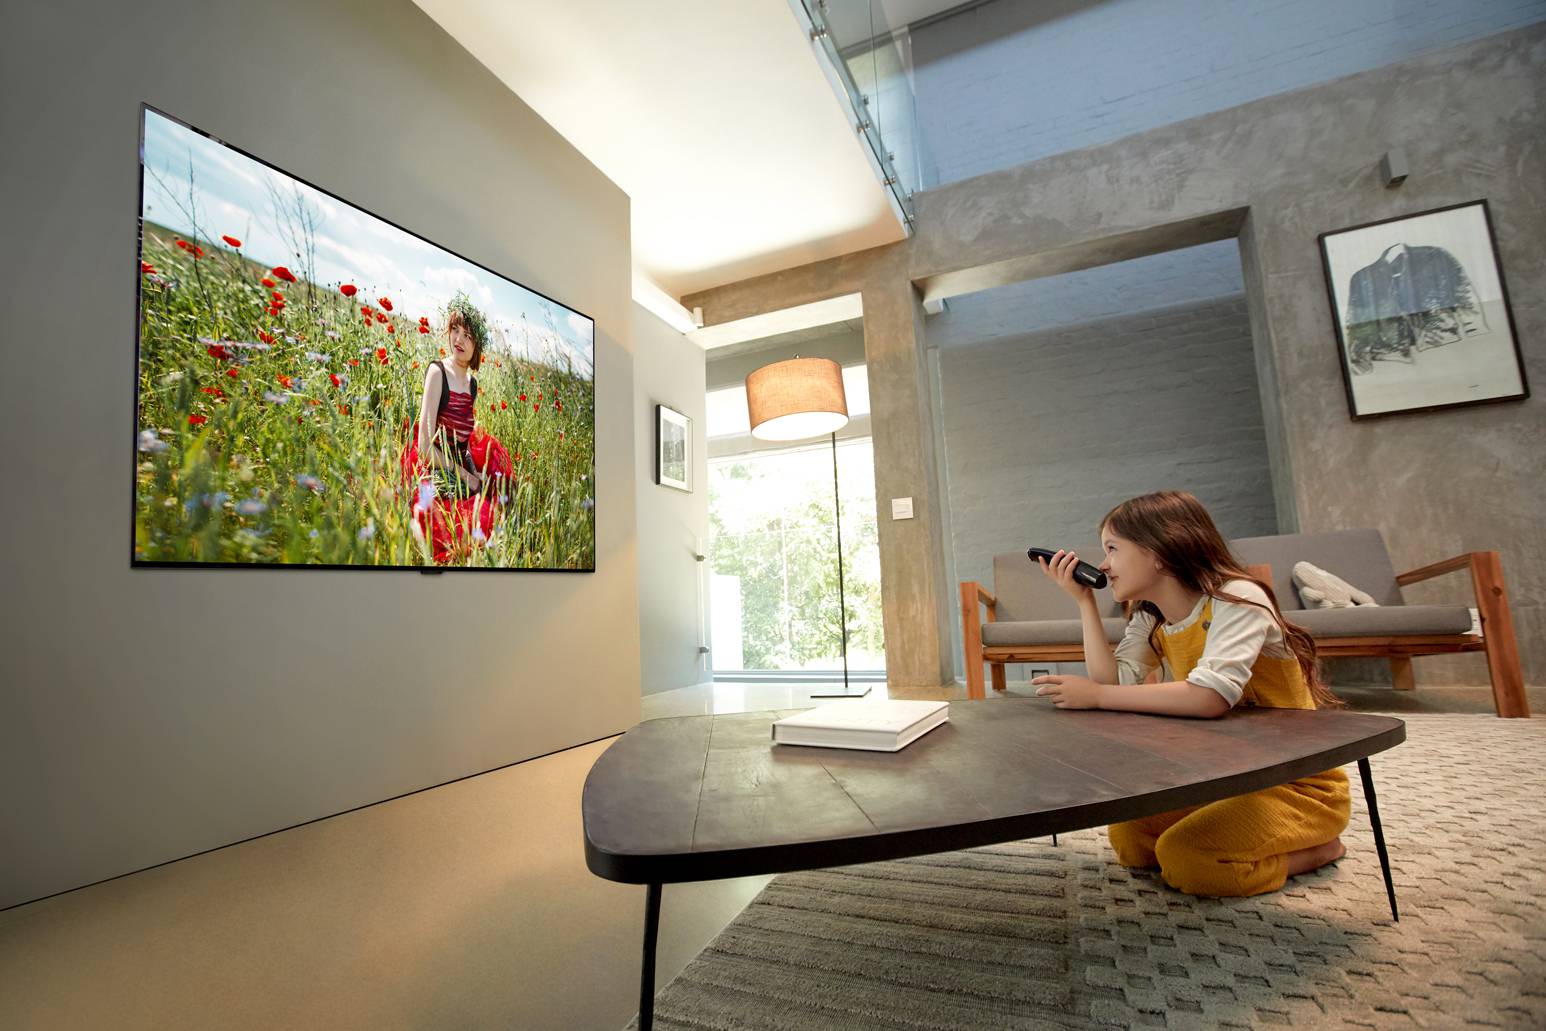 LG-evi pametni televizori spremni za novu eru digitalne televizije u Hrvatskoj